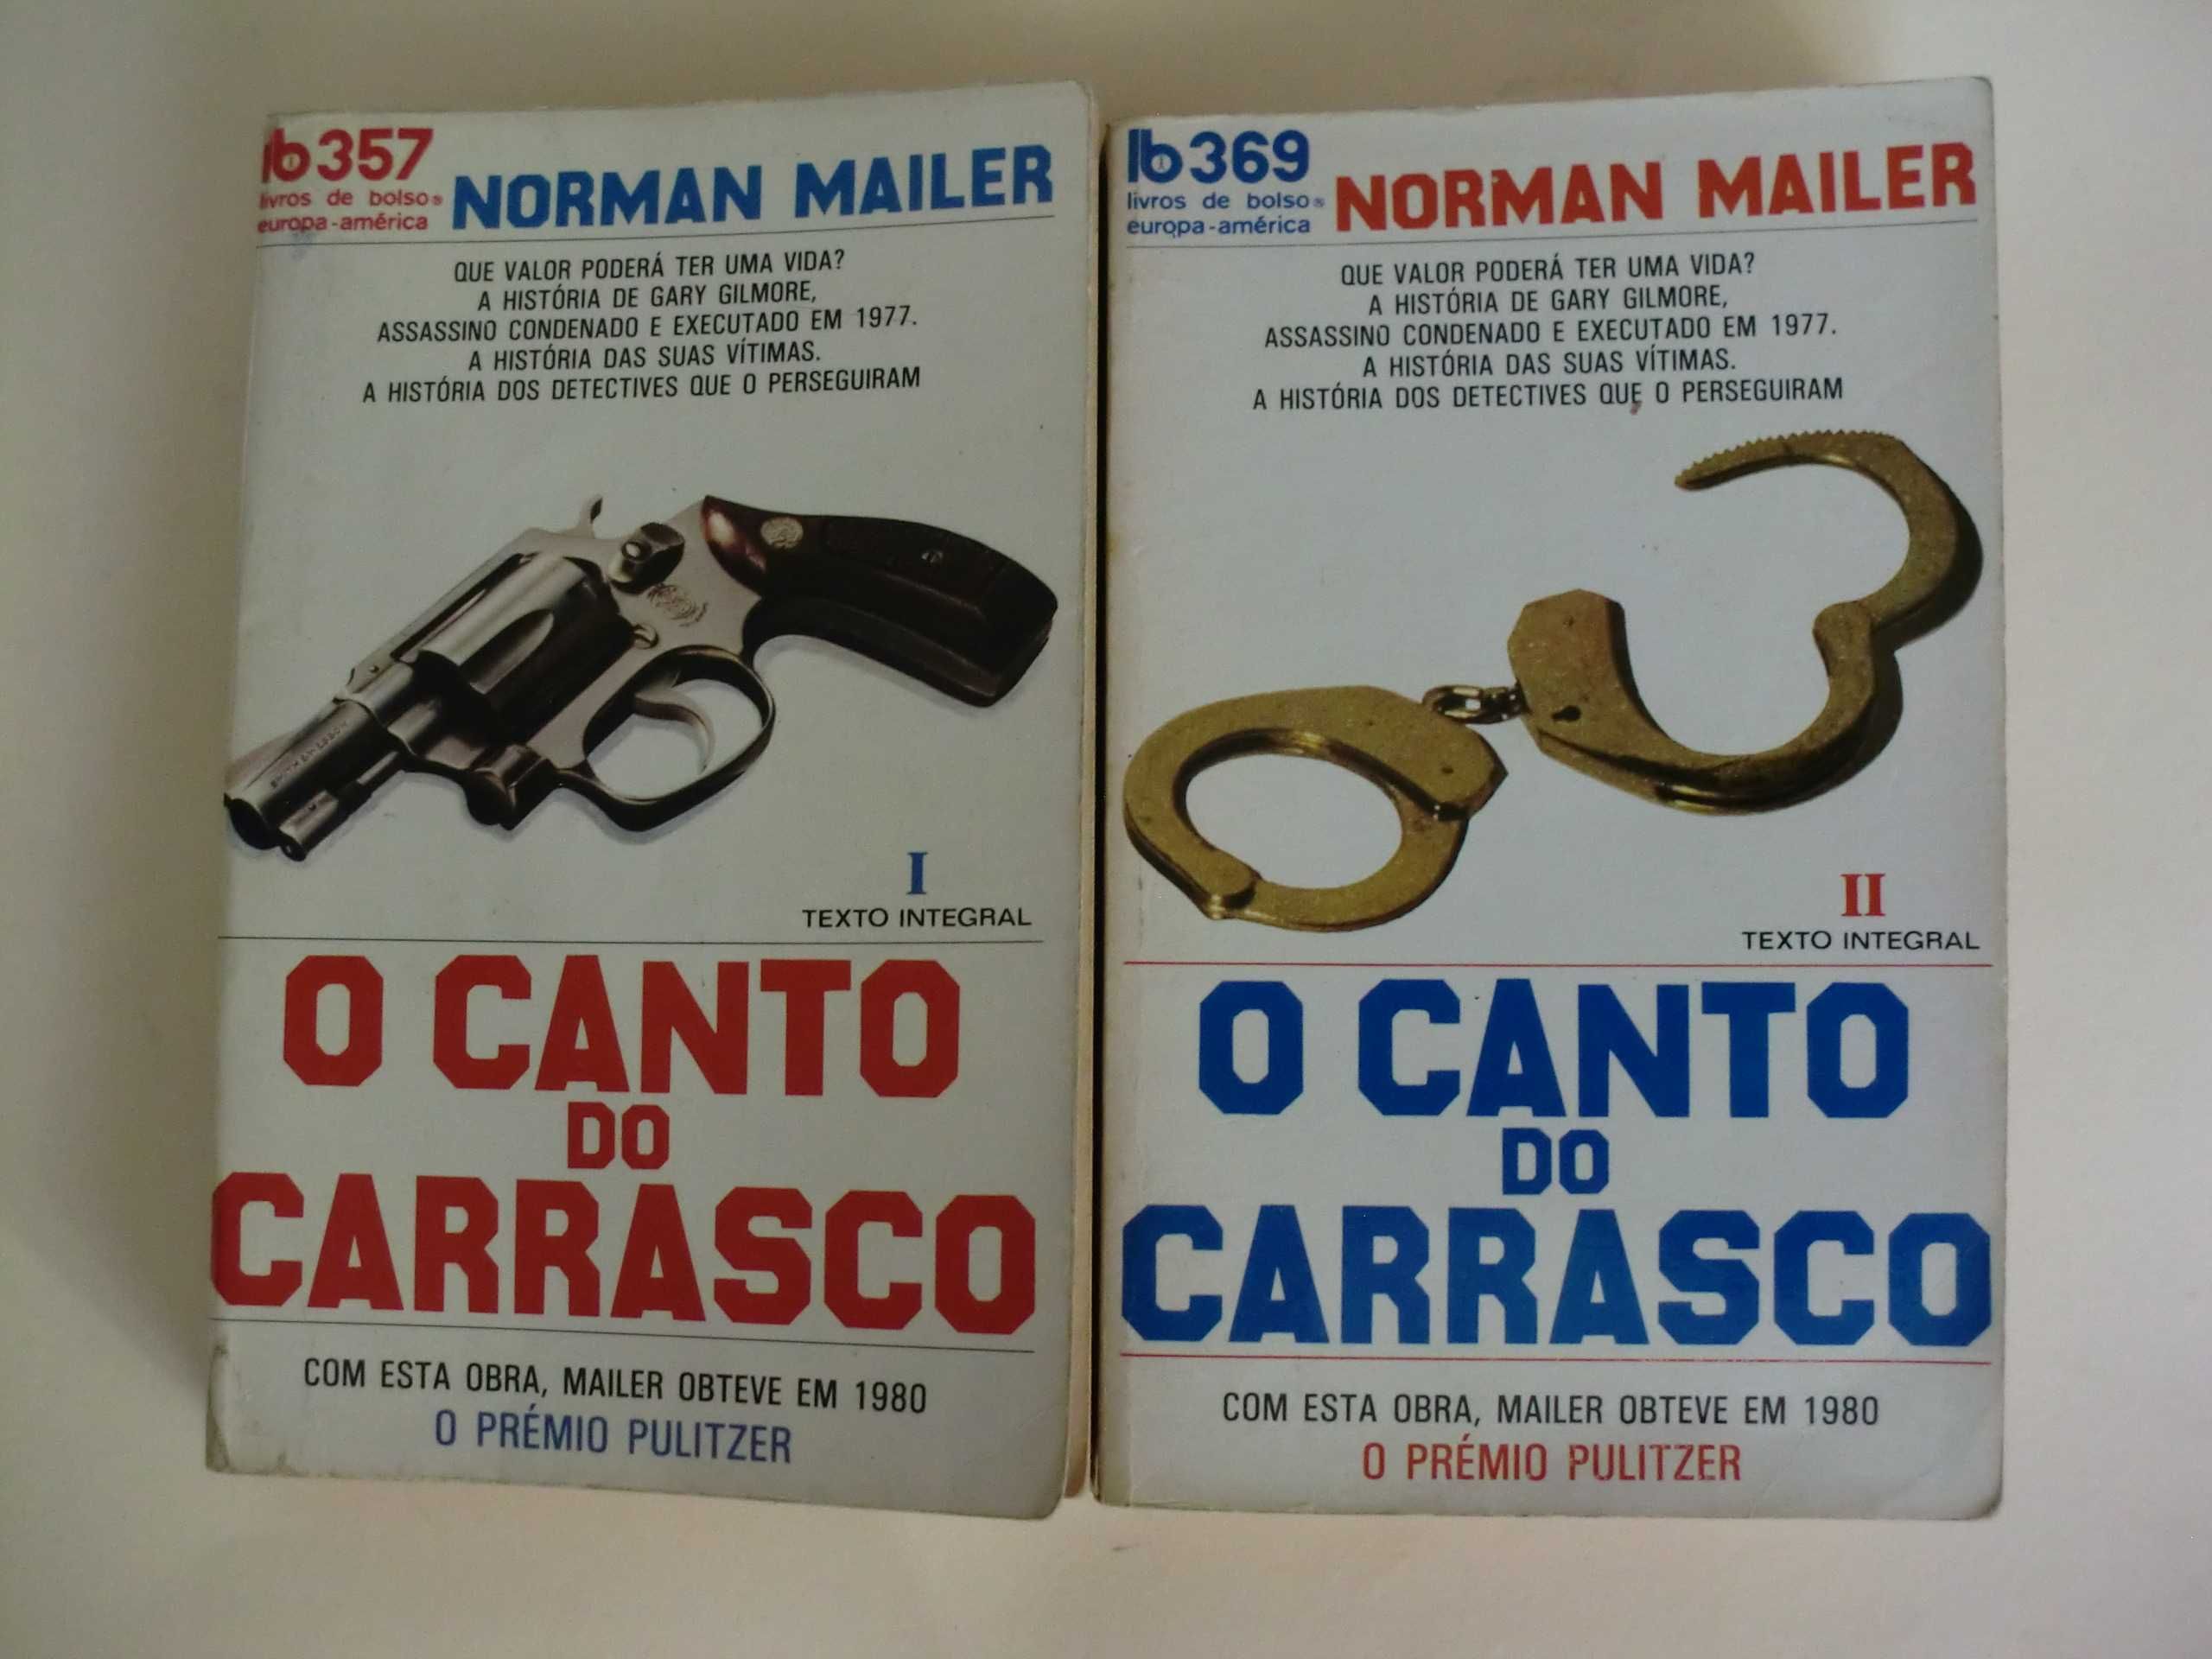 O Canto do Carrasco
de Norman Mailer